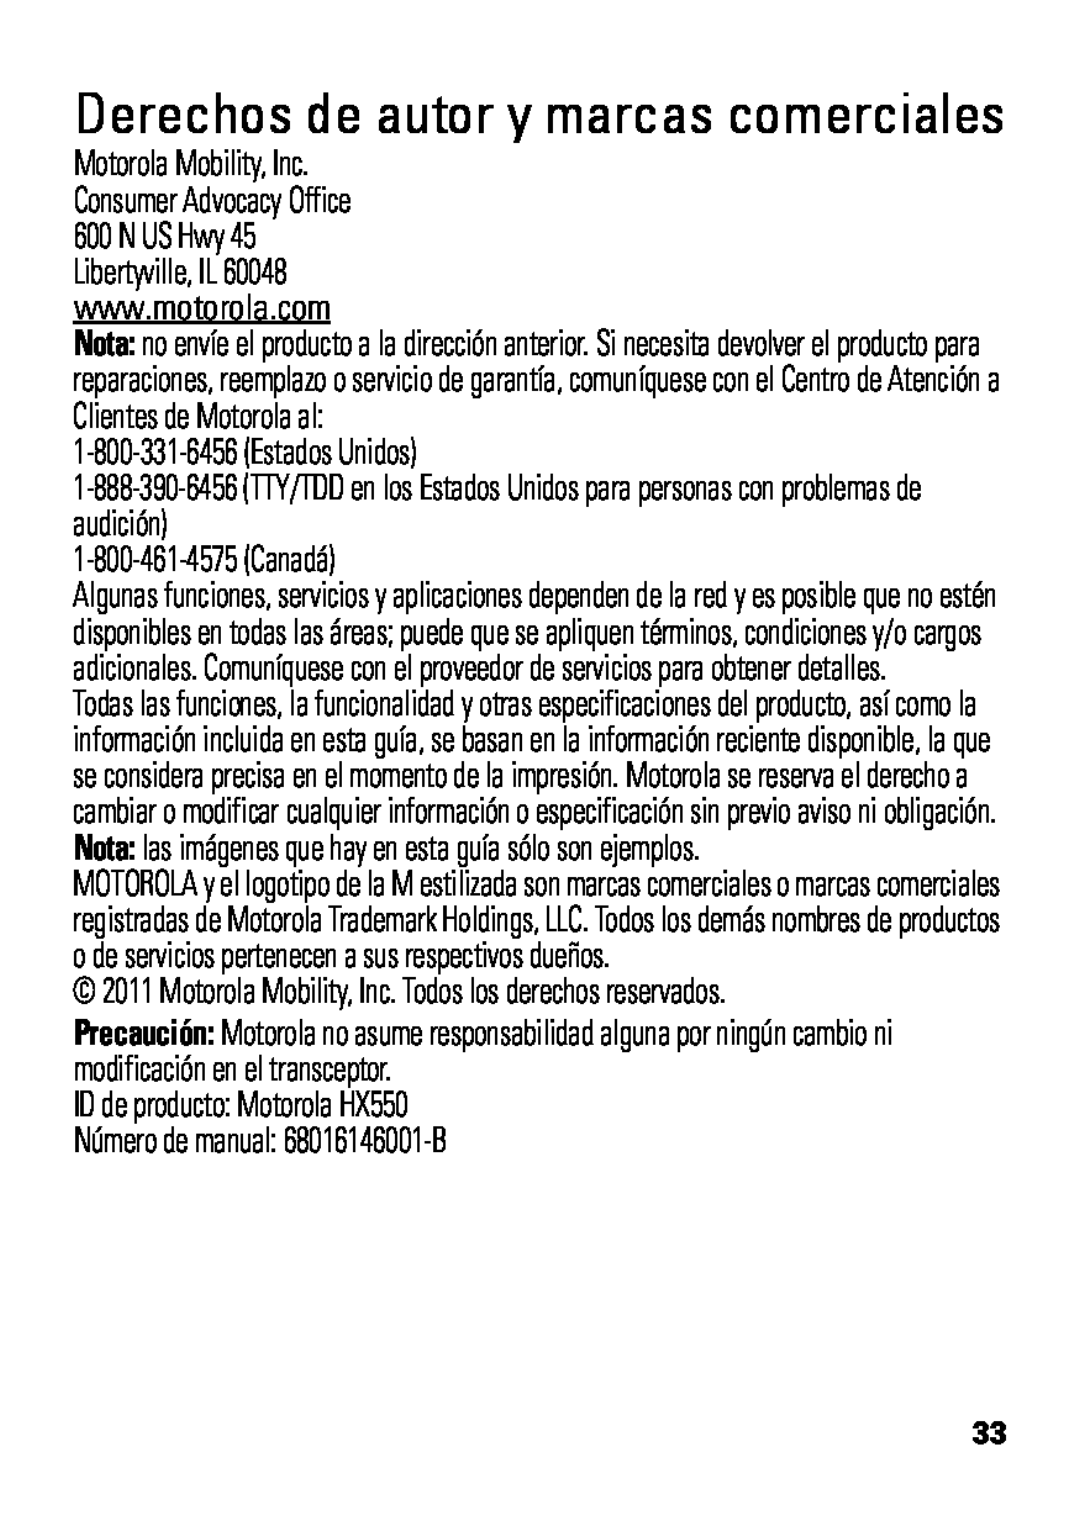 Motorola HX550 manual Derechos de autor y marcas comerciales, 1-800-331-6456Estados Unidos, 1-800-461-4575Canadá 